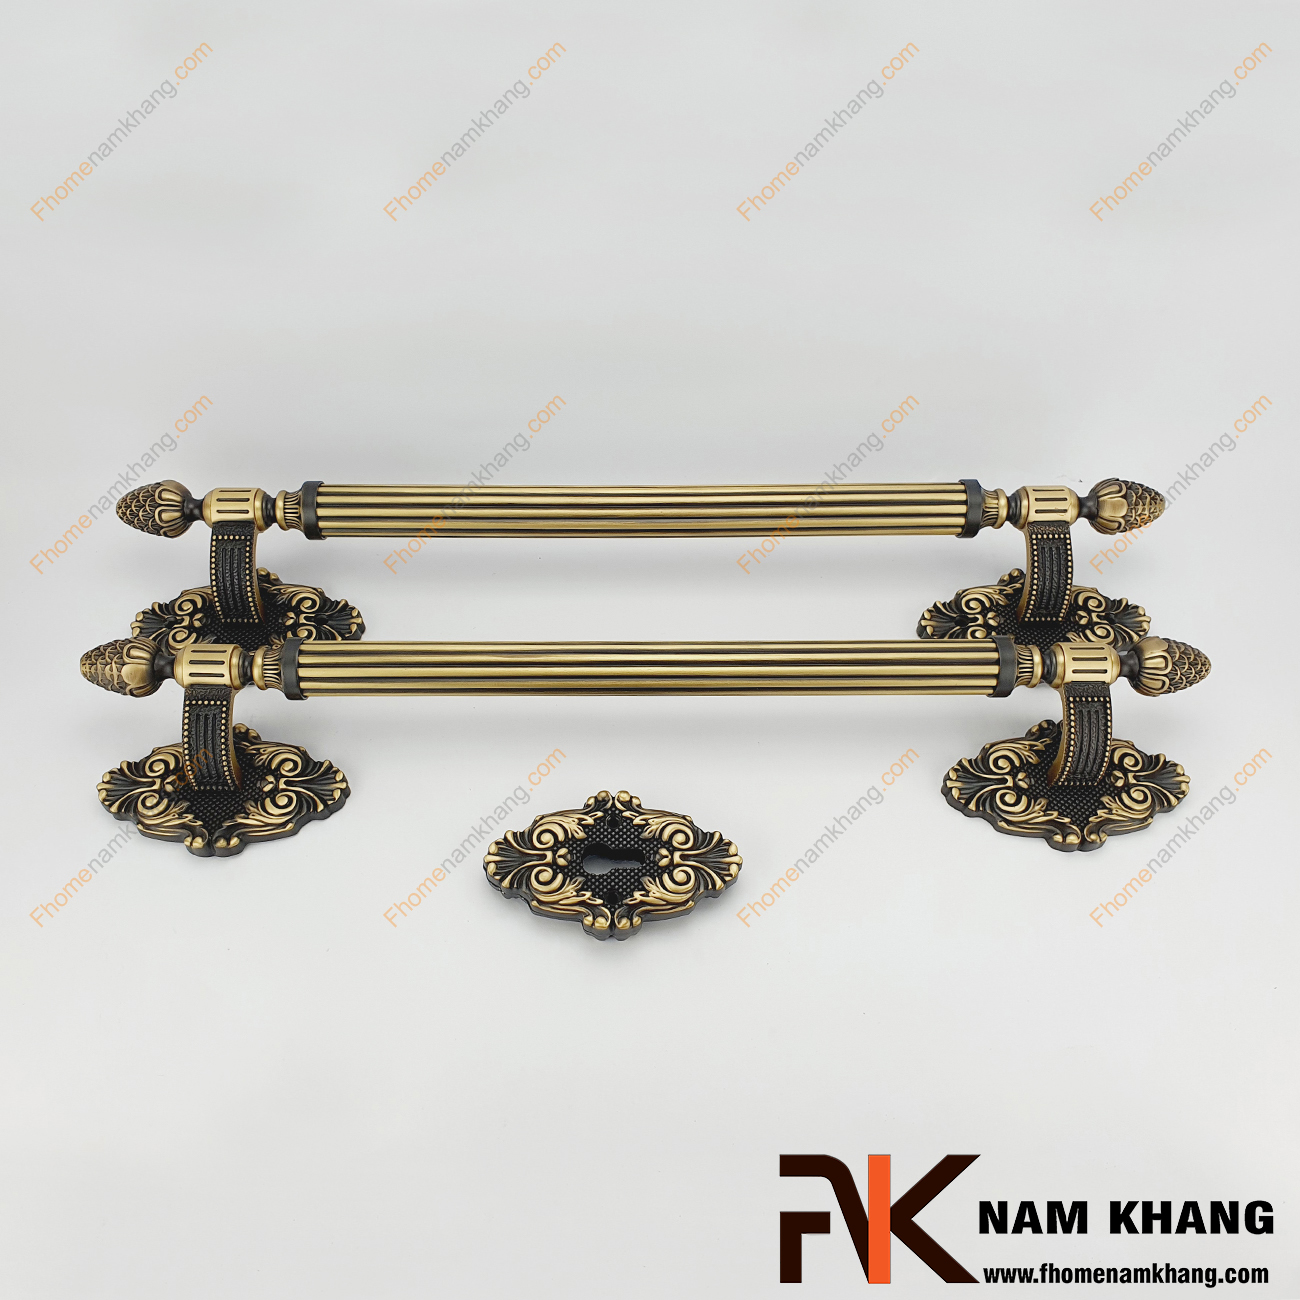 Khóa cửa sảnh phối hợp cổ điển bằng đồng NK362K-CFE là dạng khóa cửa phối hợp đặc trưng khi kết hợp dòng khóa thân rời và tay nắm cửa sảnh lớn.